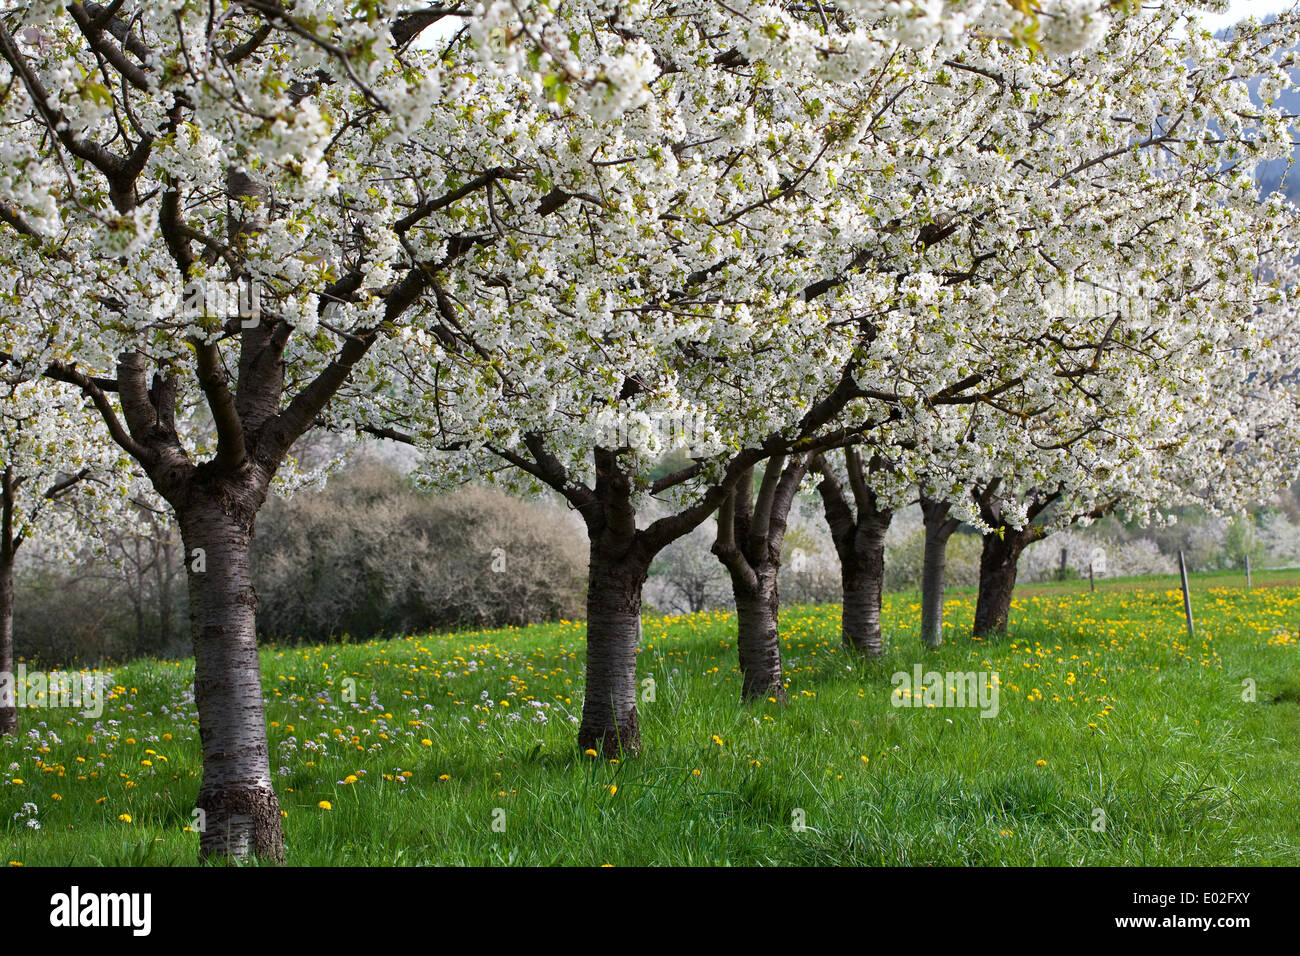 Cherry trees in full blossom, Obereggenen, Markgräflerland, Black Forest, Baden-Württemberg, Germany Stock Photo